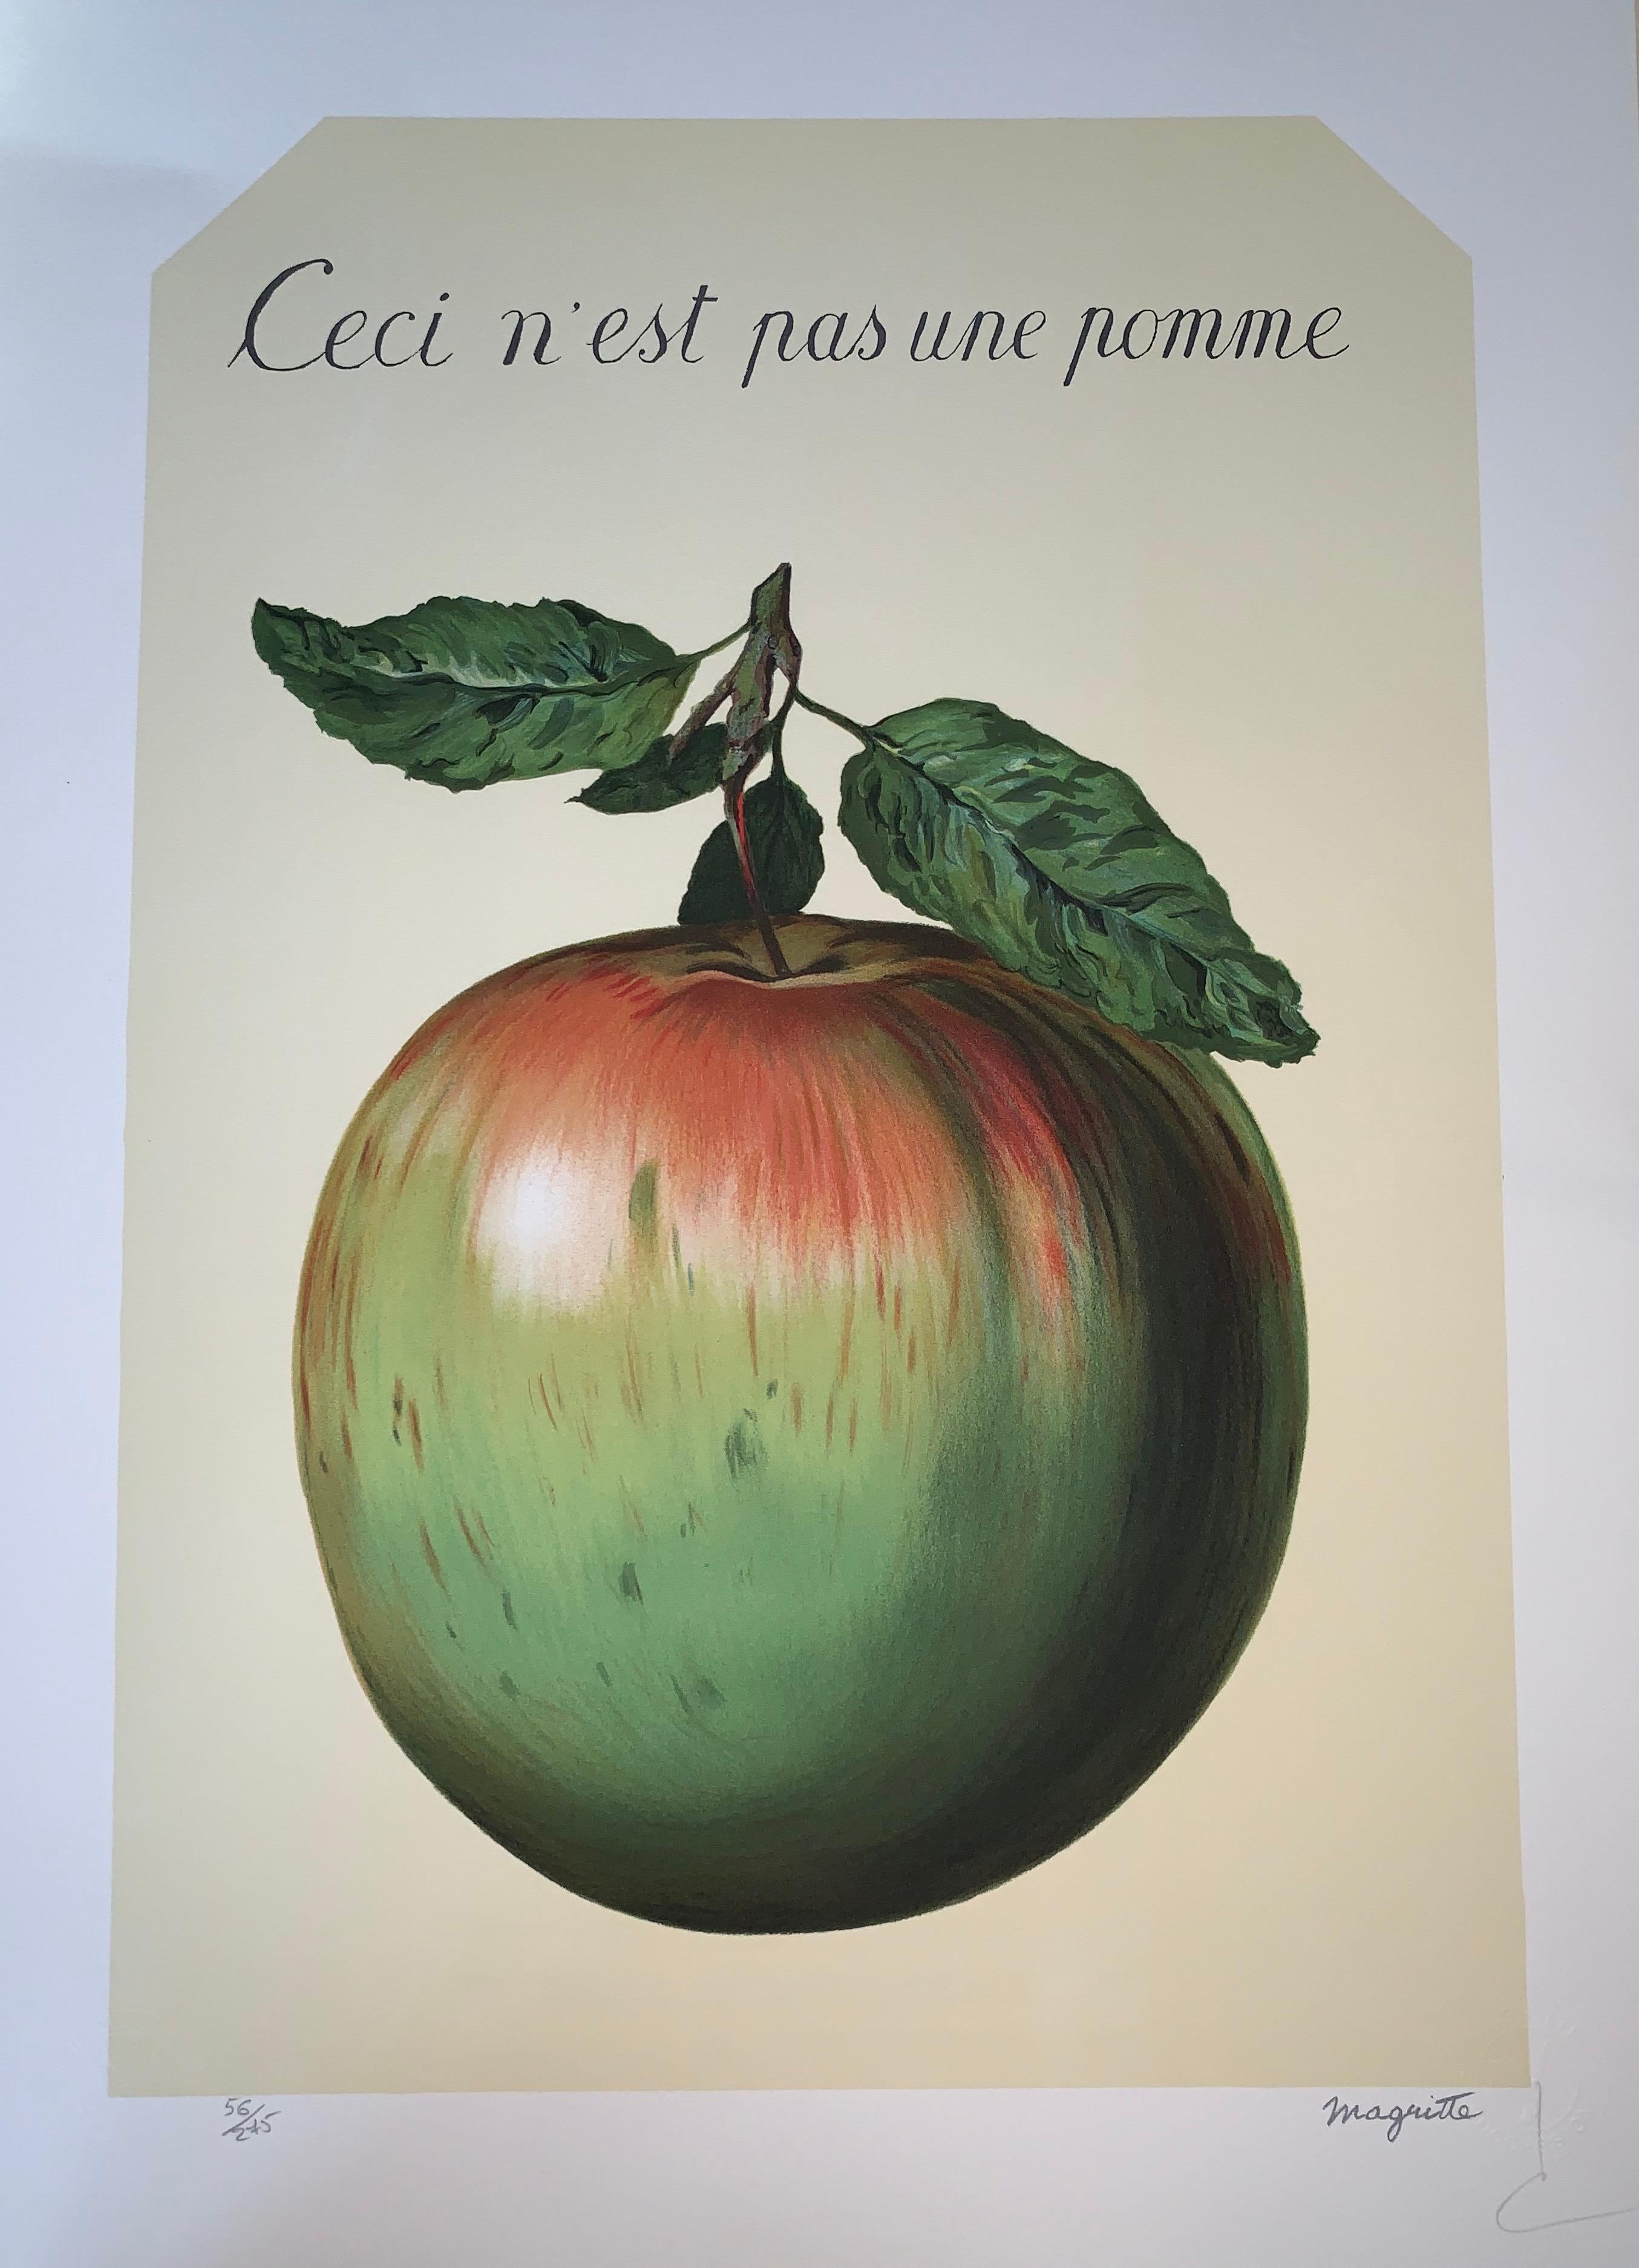 Ceci n'est pas une Pomme - 20th Century, Surrealist, Lithograph, Figurative Prin - Print by (after) René Magritte